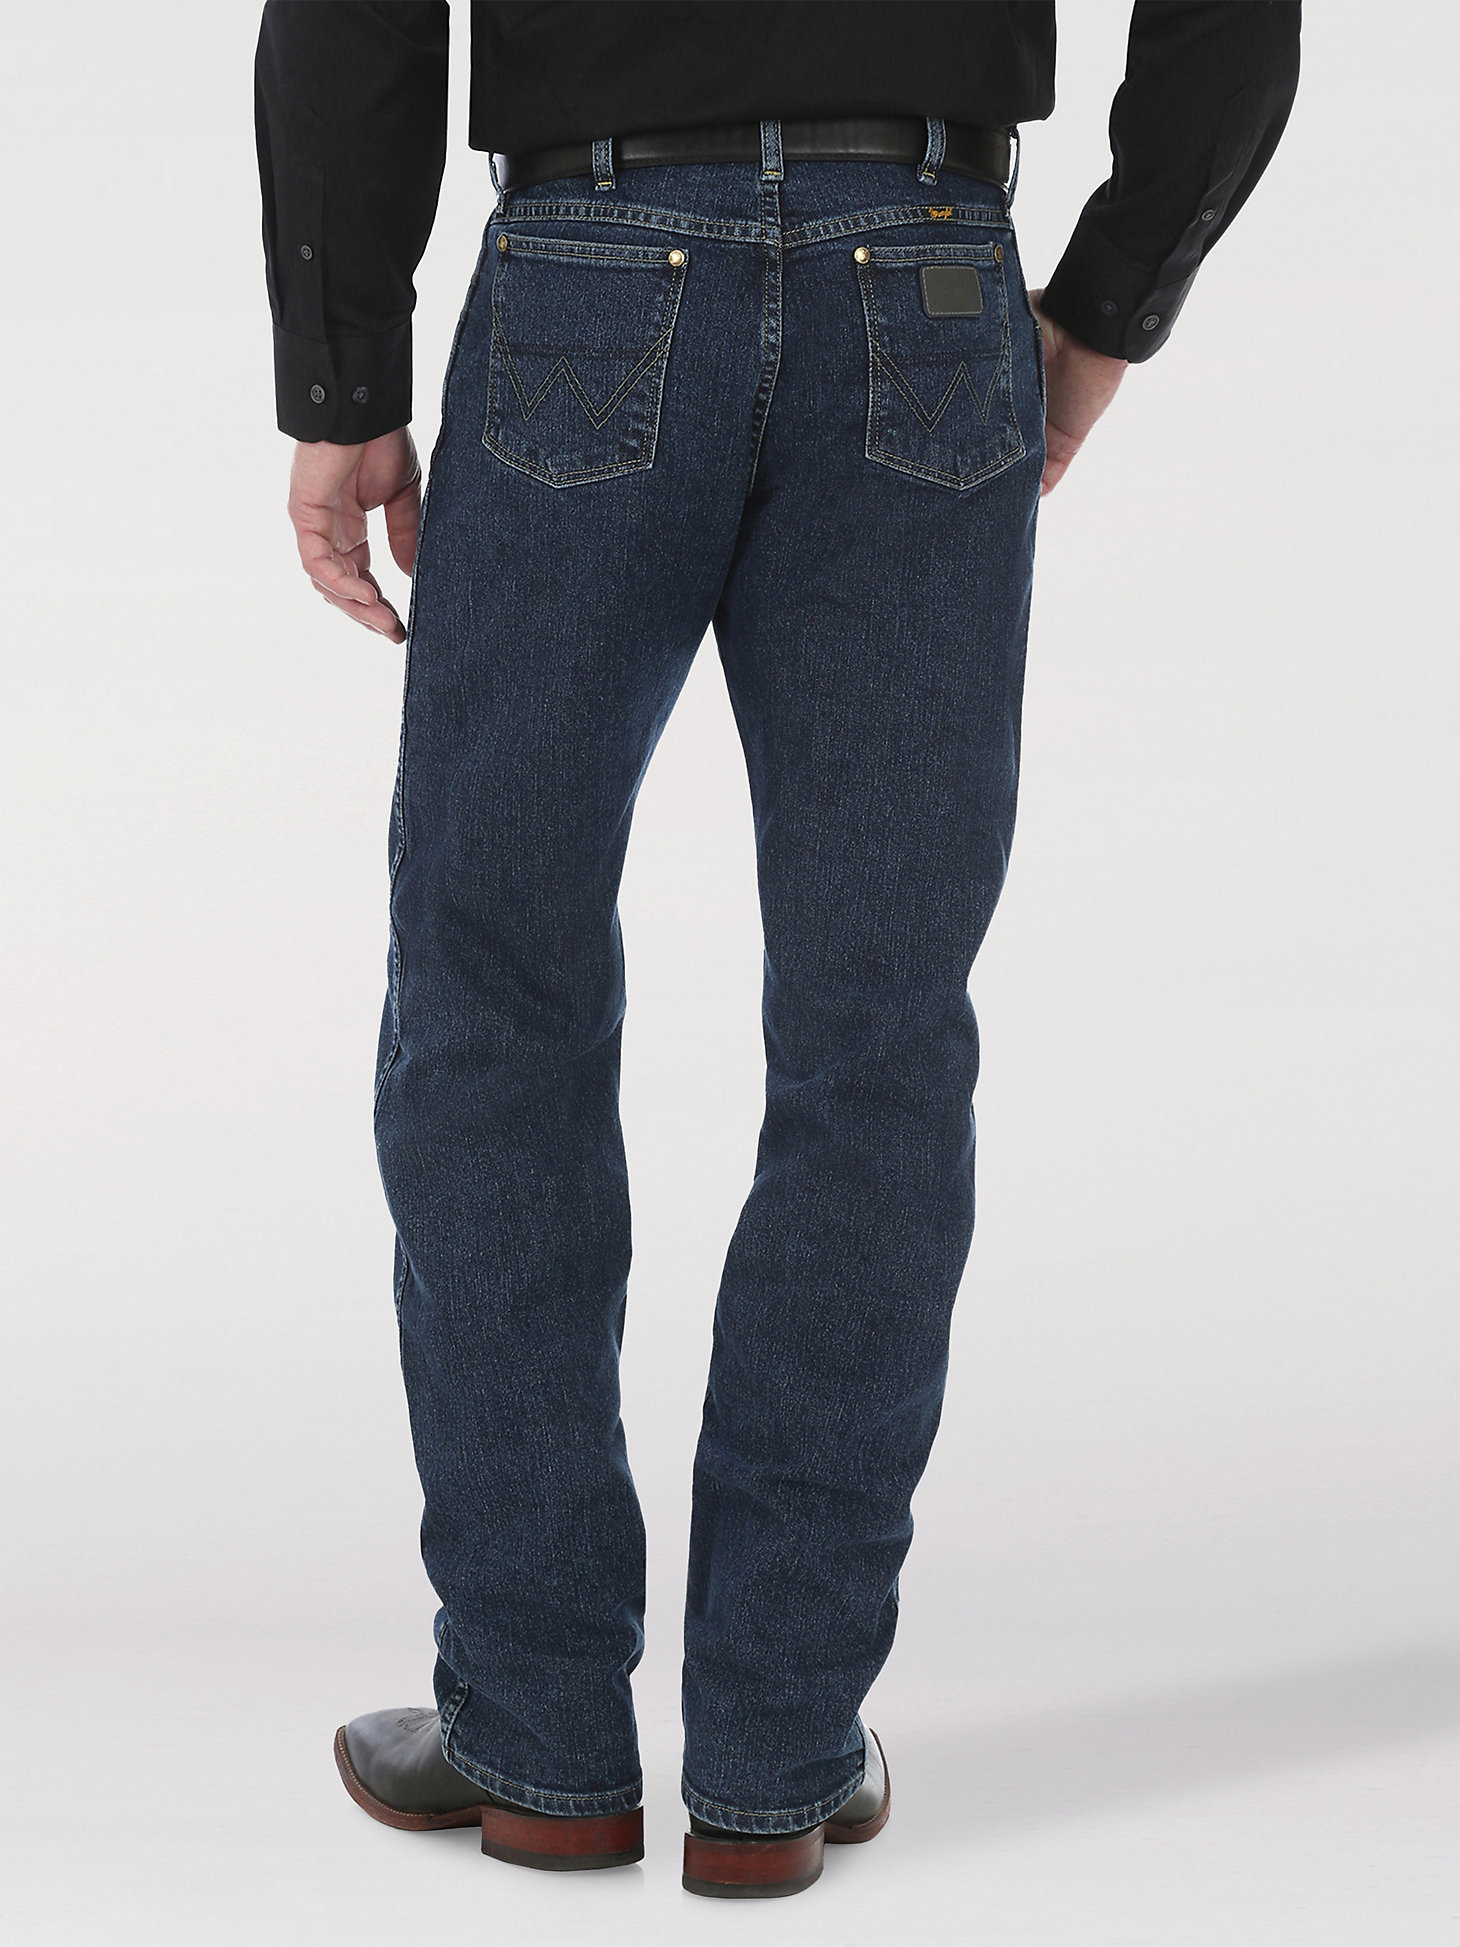 George Strait Cowboy Cut® Regular Fit Jean in Dark Amarillo alternative view 2